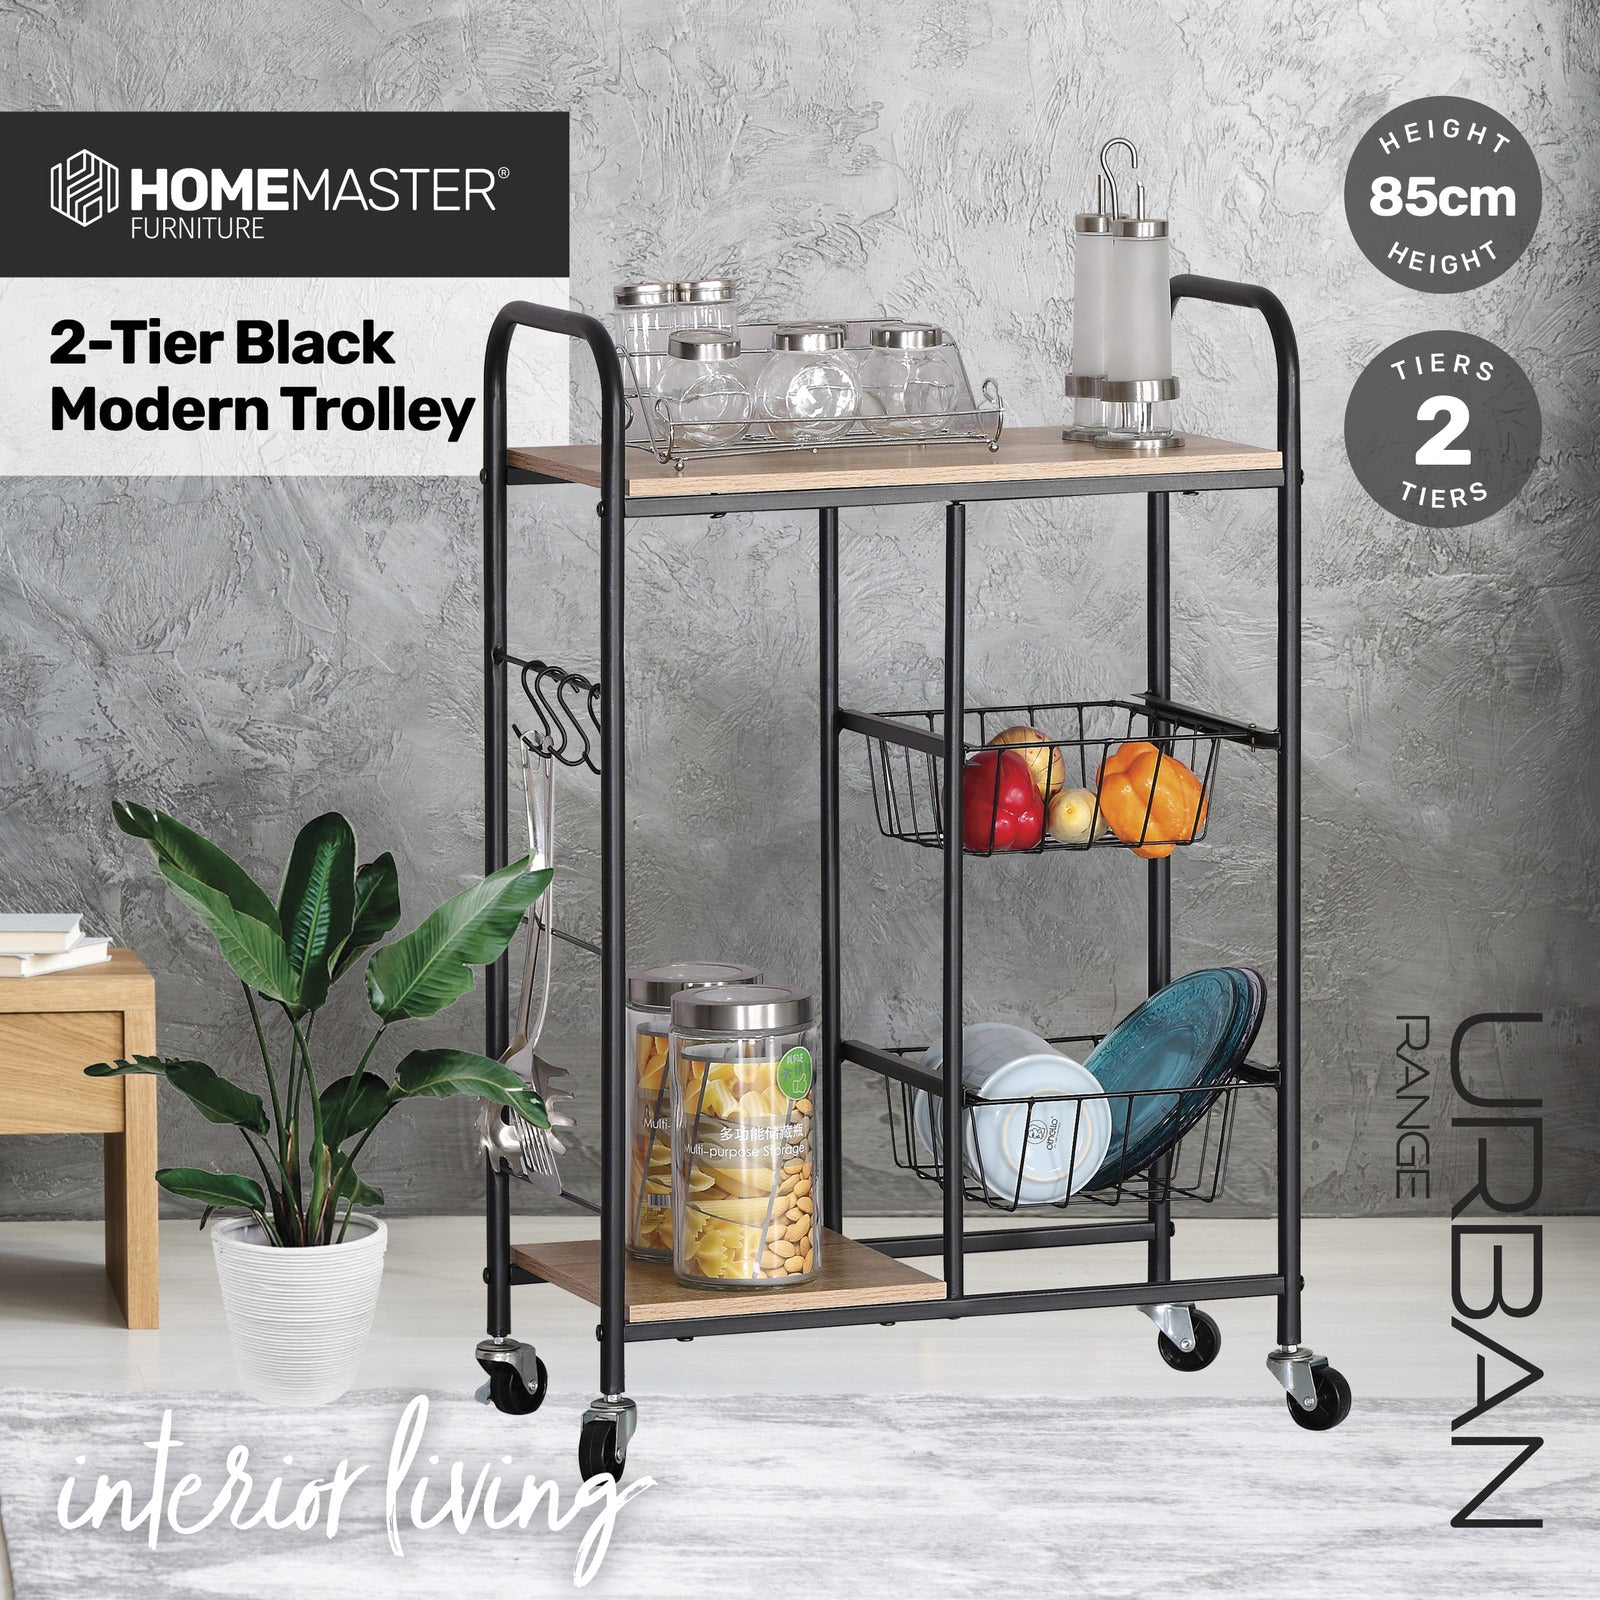 Home Master Kitchen Trolley 2 Tier Stylish Modern Industrial Design 85cm